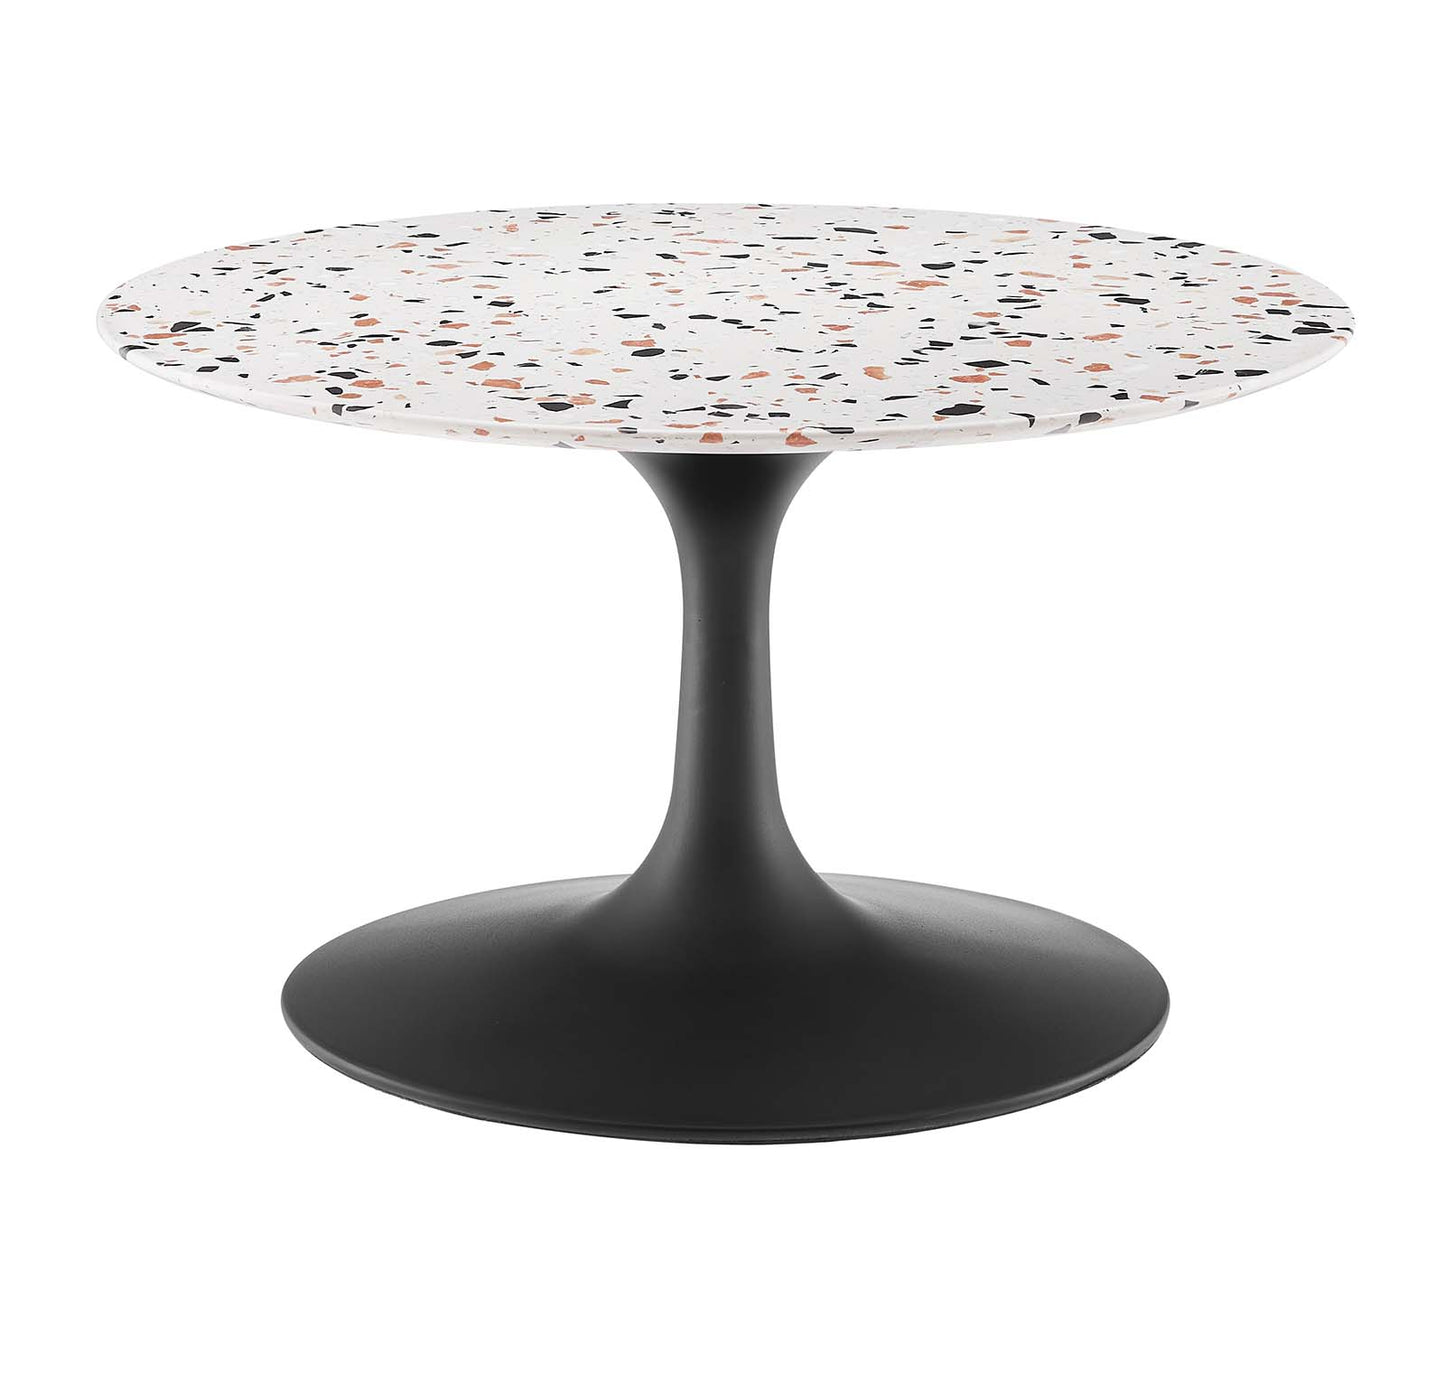 Lippa 28" Round Terrazzo Coffee Table Black White EEI-5712-BLK-WHI